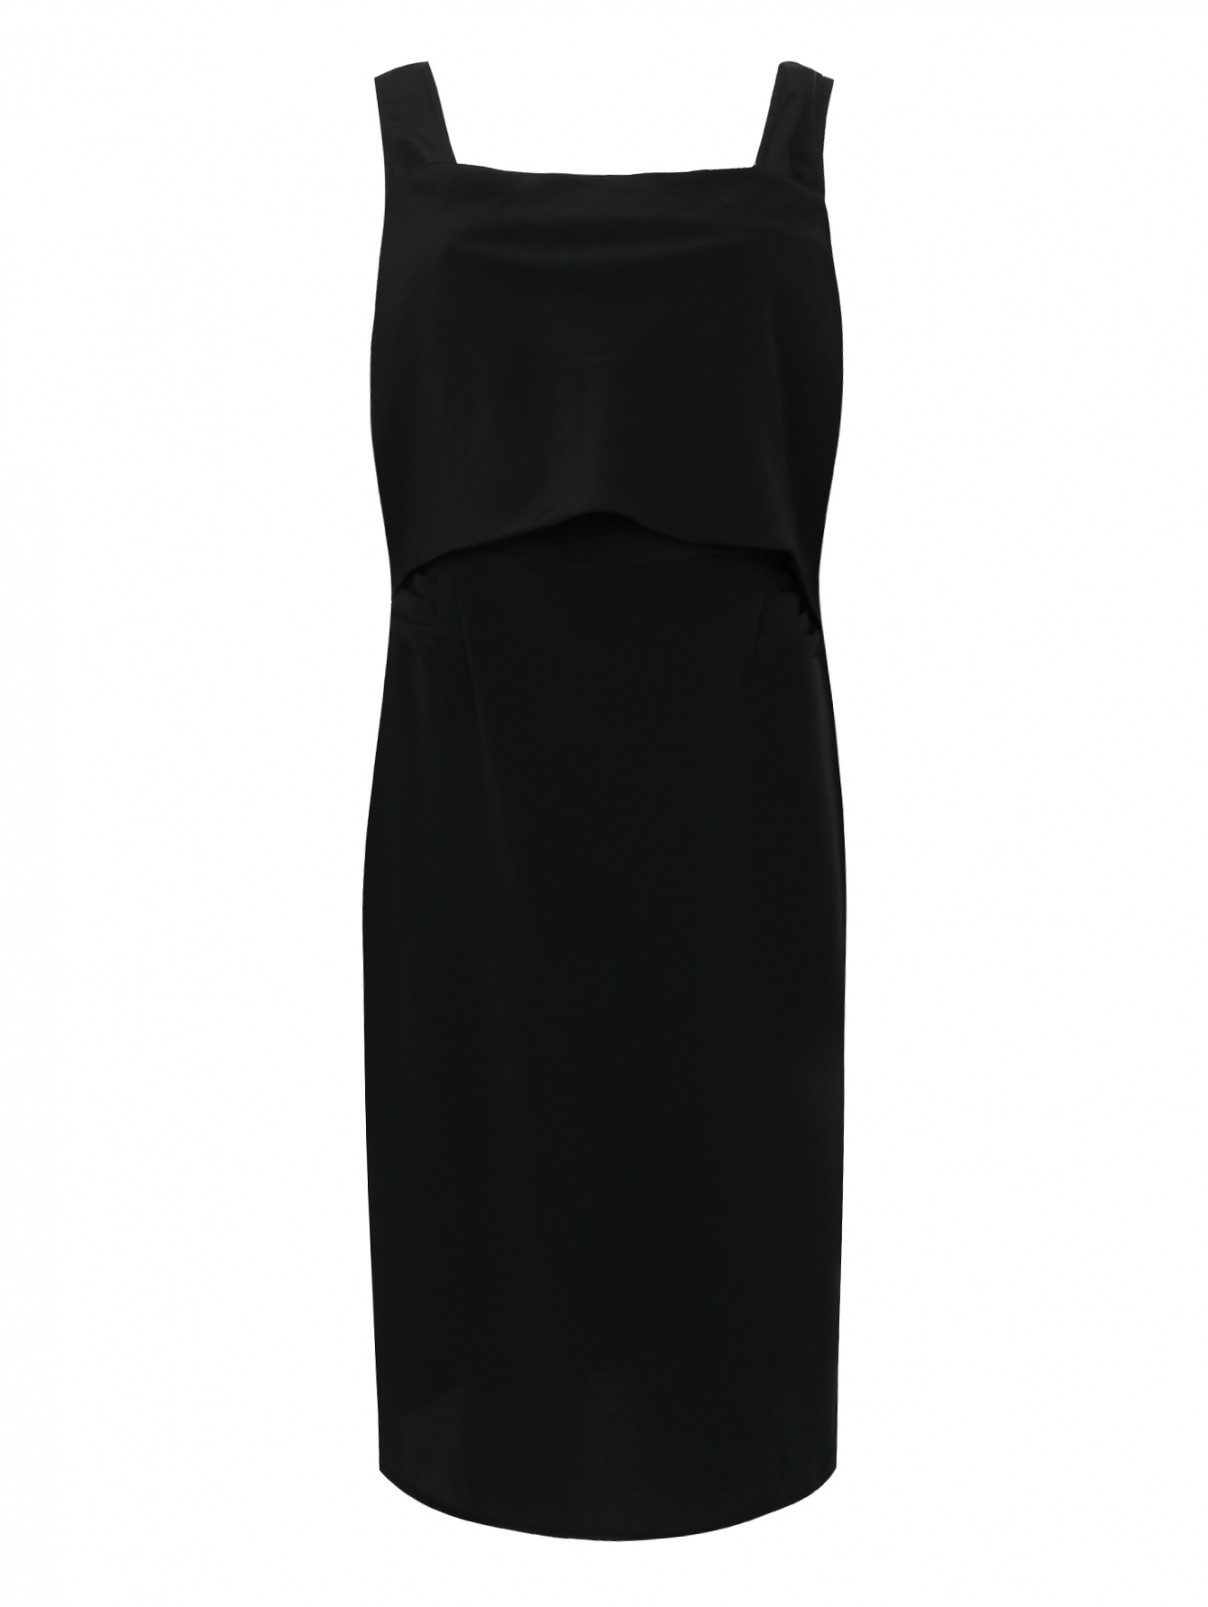 Платье-мини с драпировкой Maurizio Pecoraro  –  Общий вид  – Цвет:  Черный